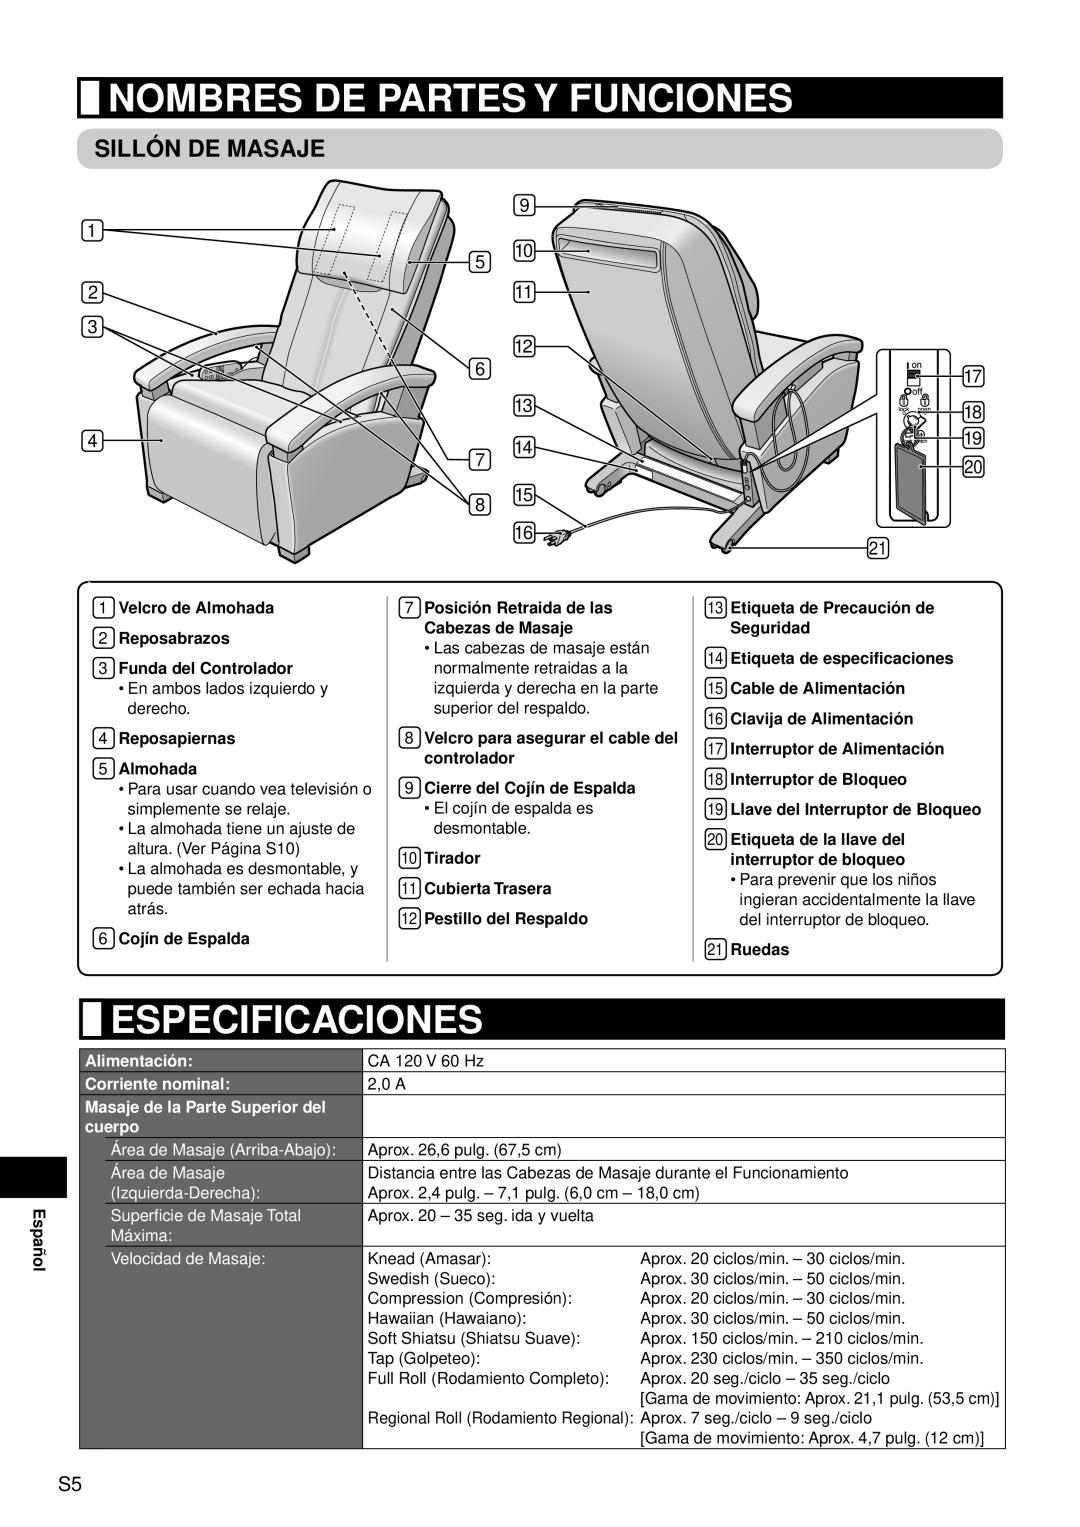 Panasonic EP1080 manual Nombres De Partes Y Funciones, Especificaciones, Sillón De Masaje 